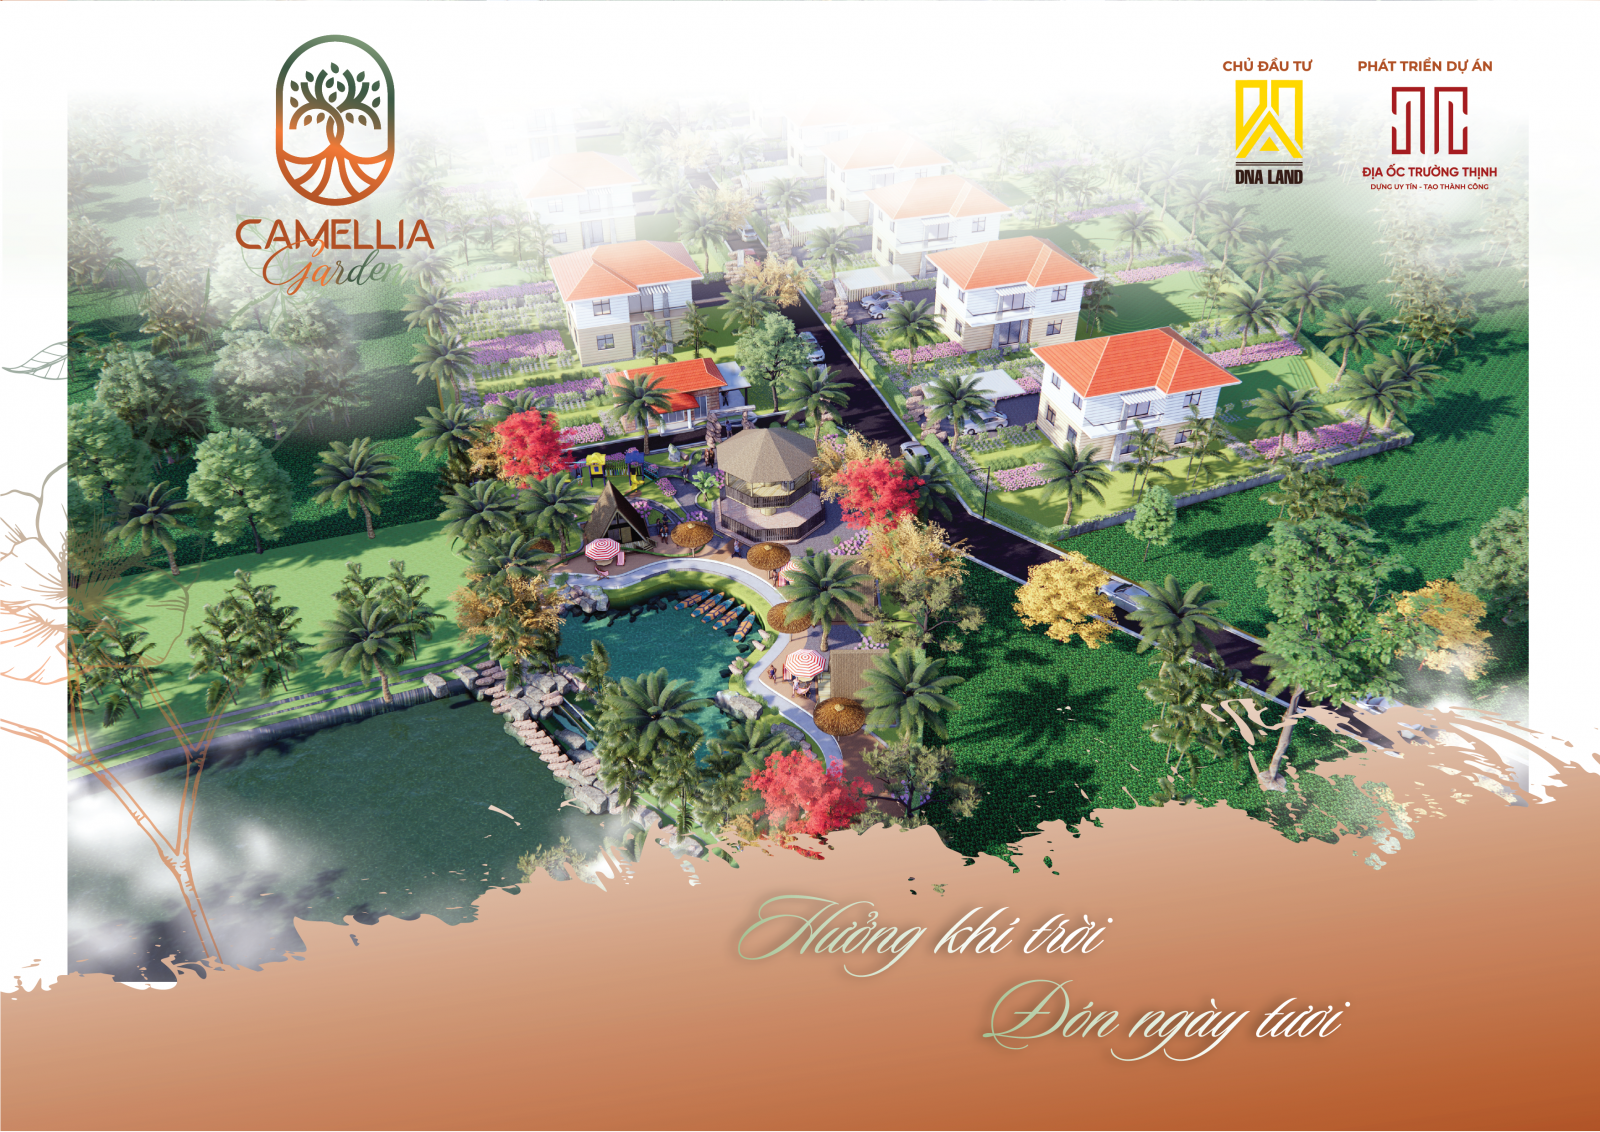 Khu sinh thái Camellia Garden do Công ty DNA Land và Địa Ốc Trường Thịnh. Dự án tại xã Thanh Bình, huyện Trảng Bom, tỉnh Đồng Nai.